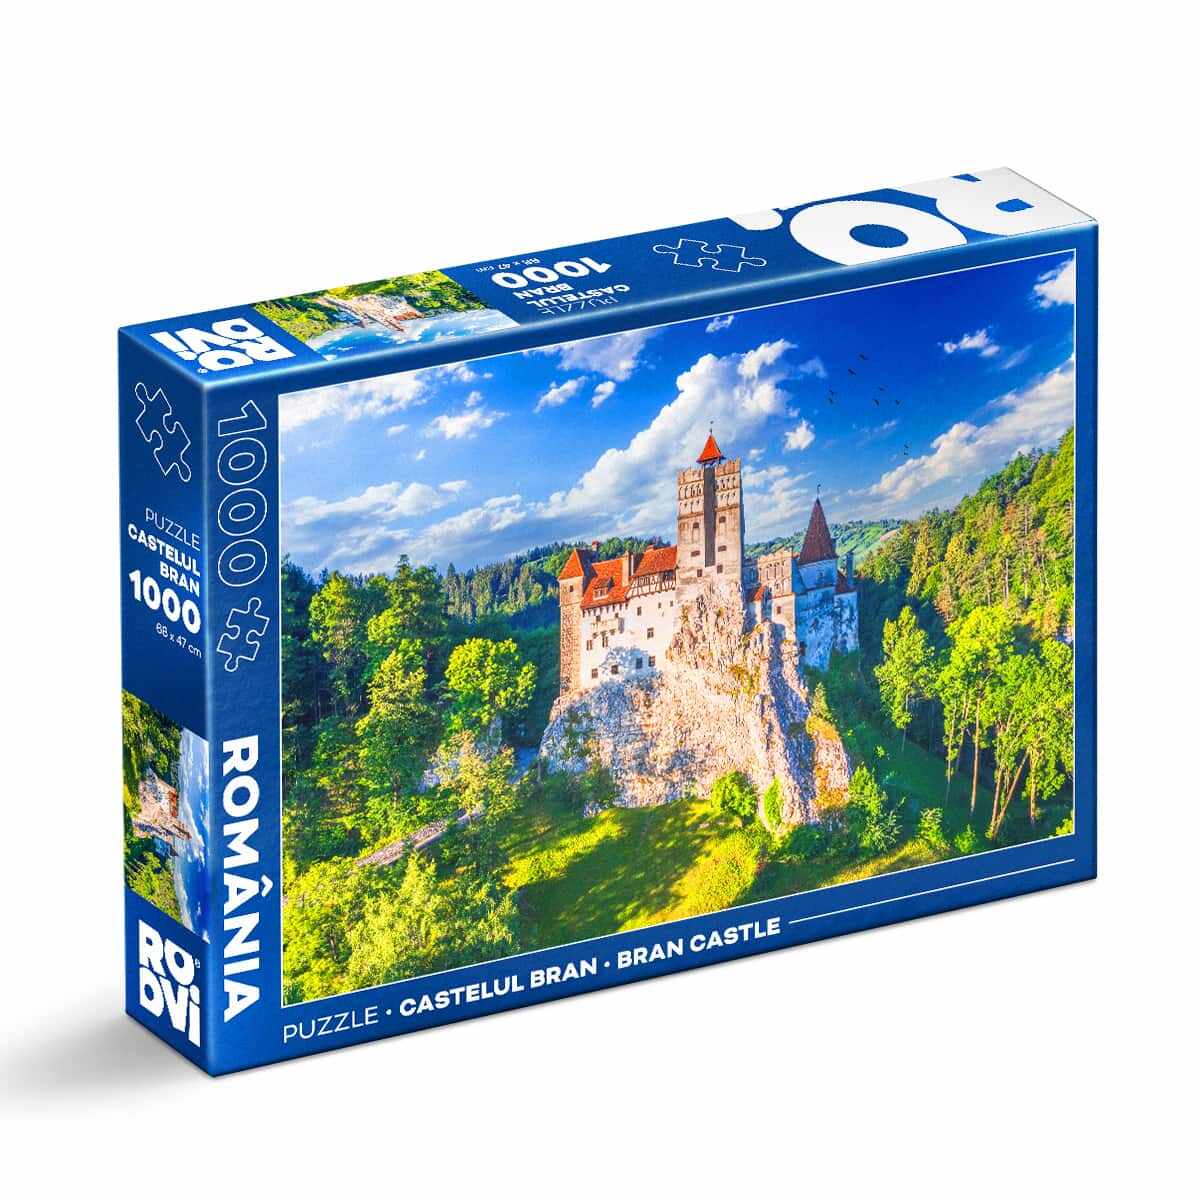 Puzzle Castelul Bran - Puzzle 1000 piese - Imagini din România